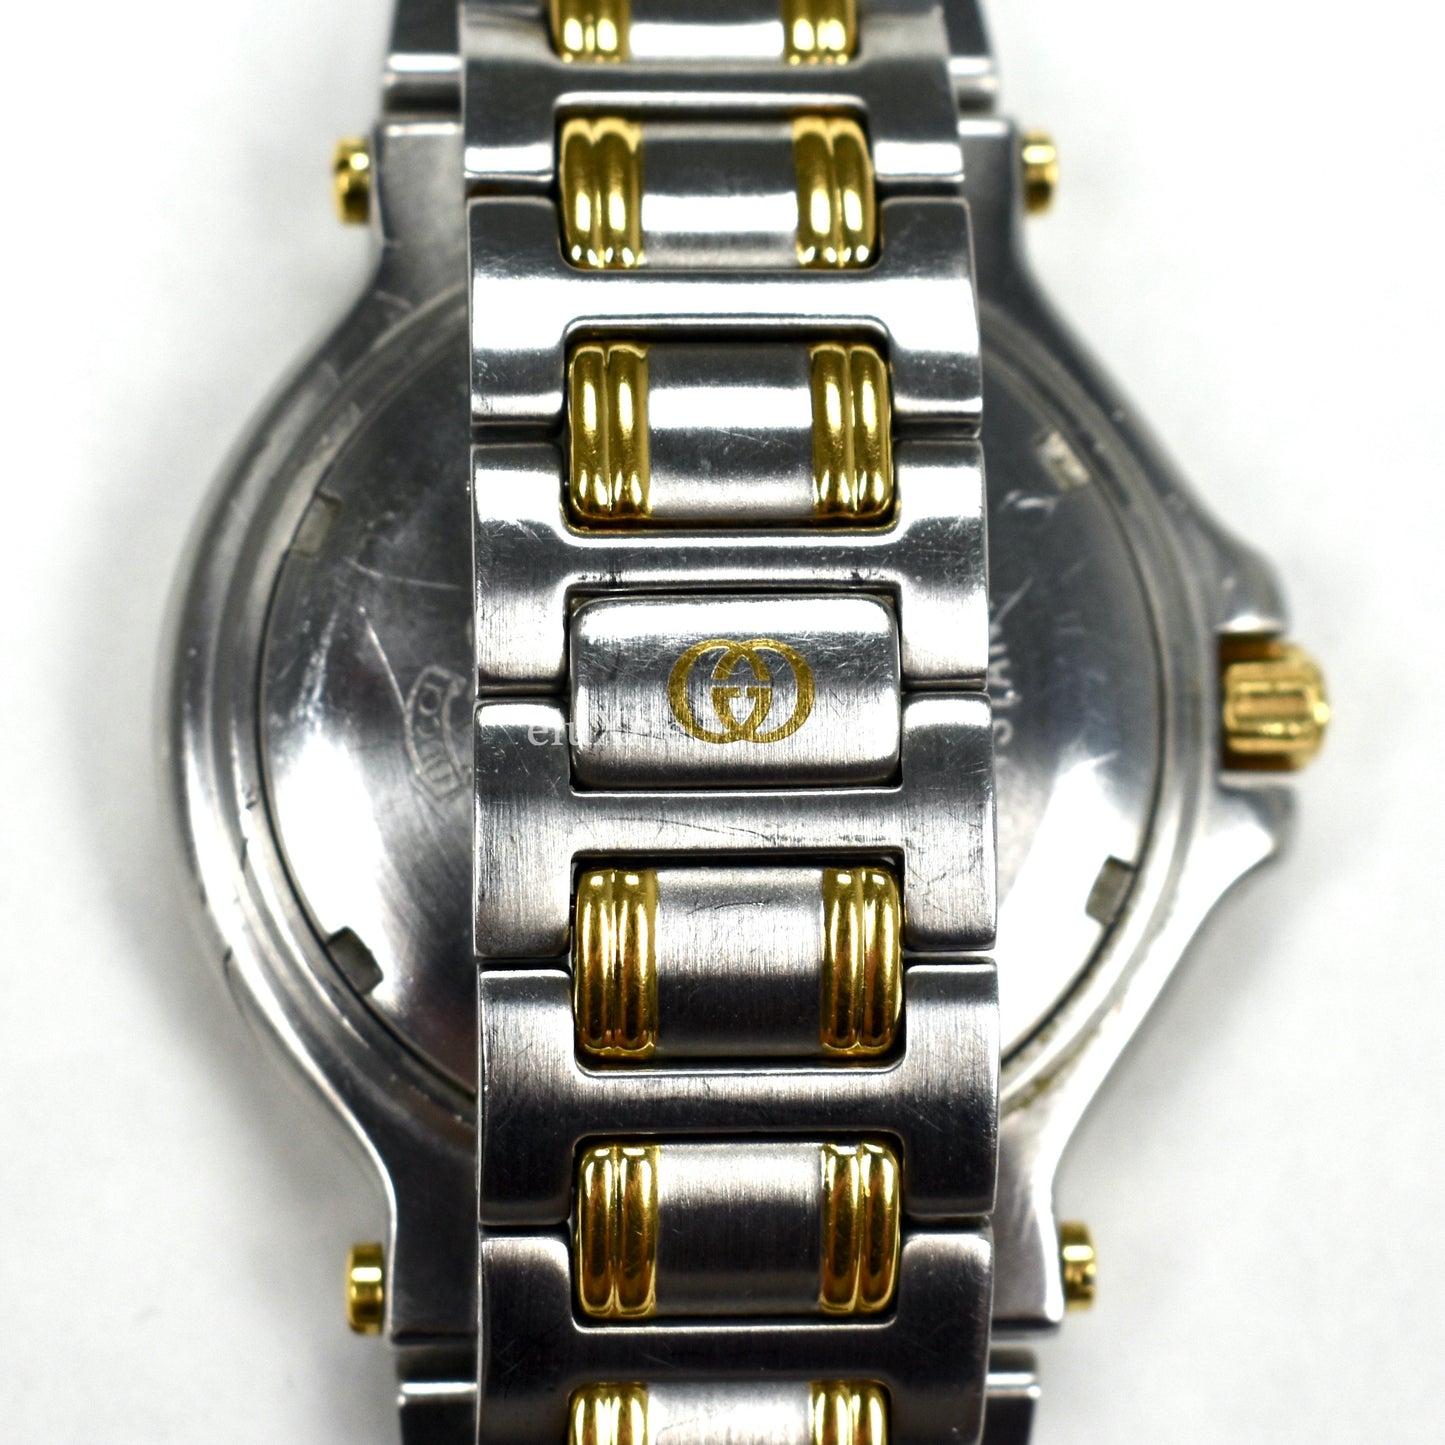 Gucci - 9700M Gold/Steel Blue Bezel Watch